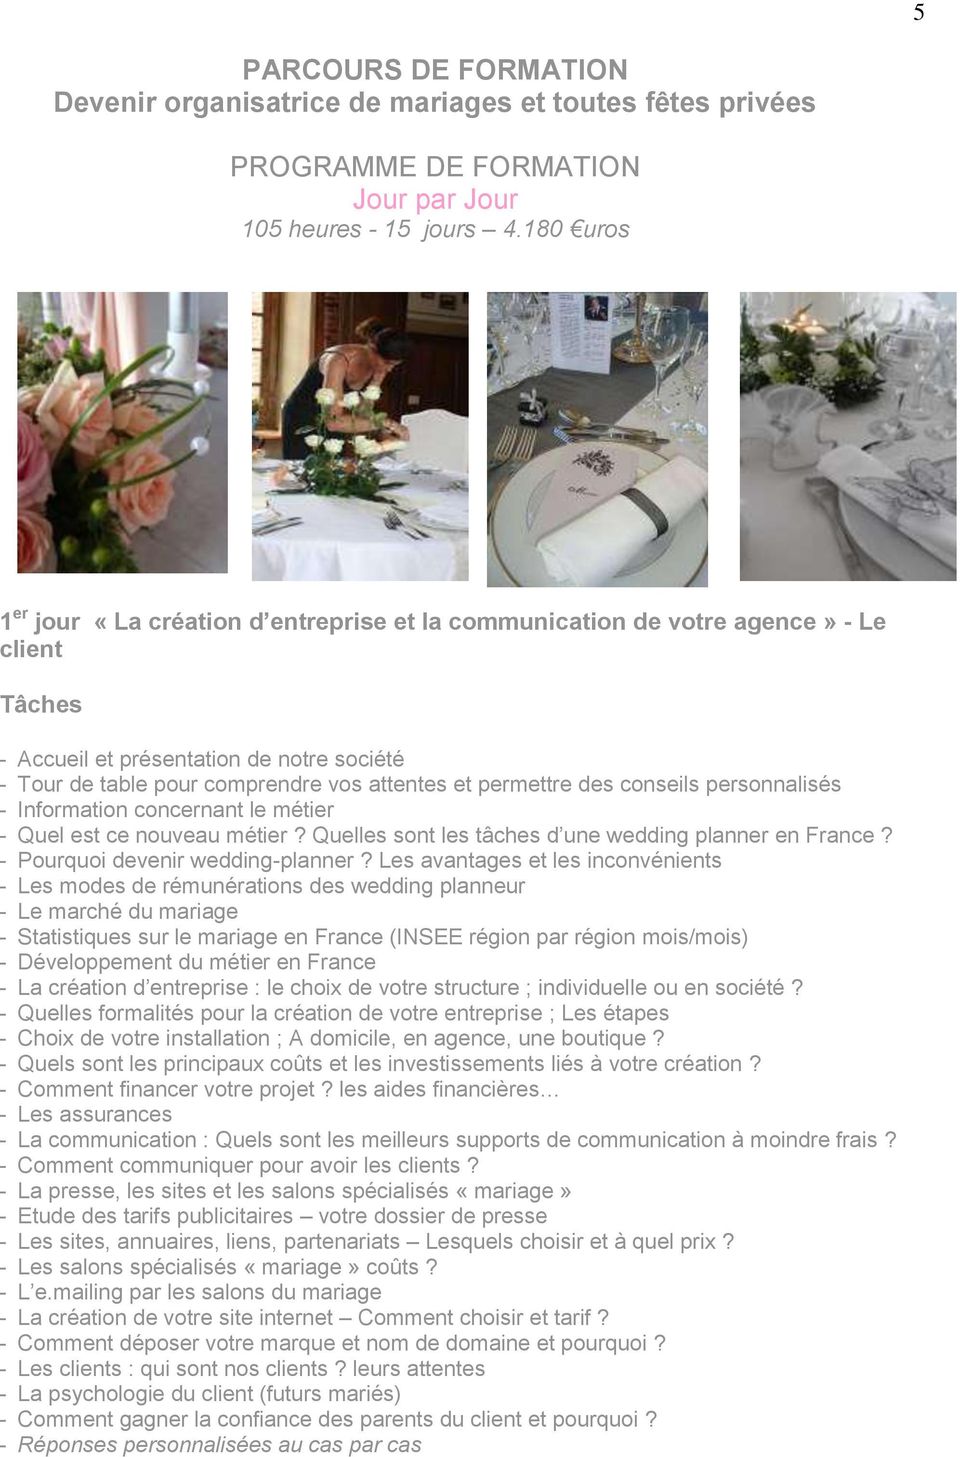 permettre des conseils personnalisés - Information concernant le métier - Quel est ce nouveau métier? Quelles sont les tâches d une wedding planner en France? - Pourquoi devenir wedding-planner?